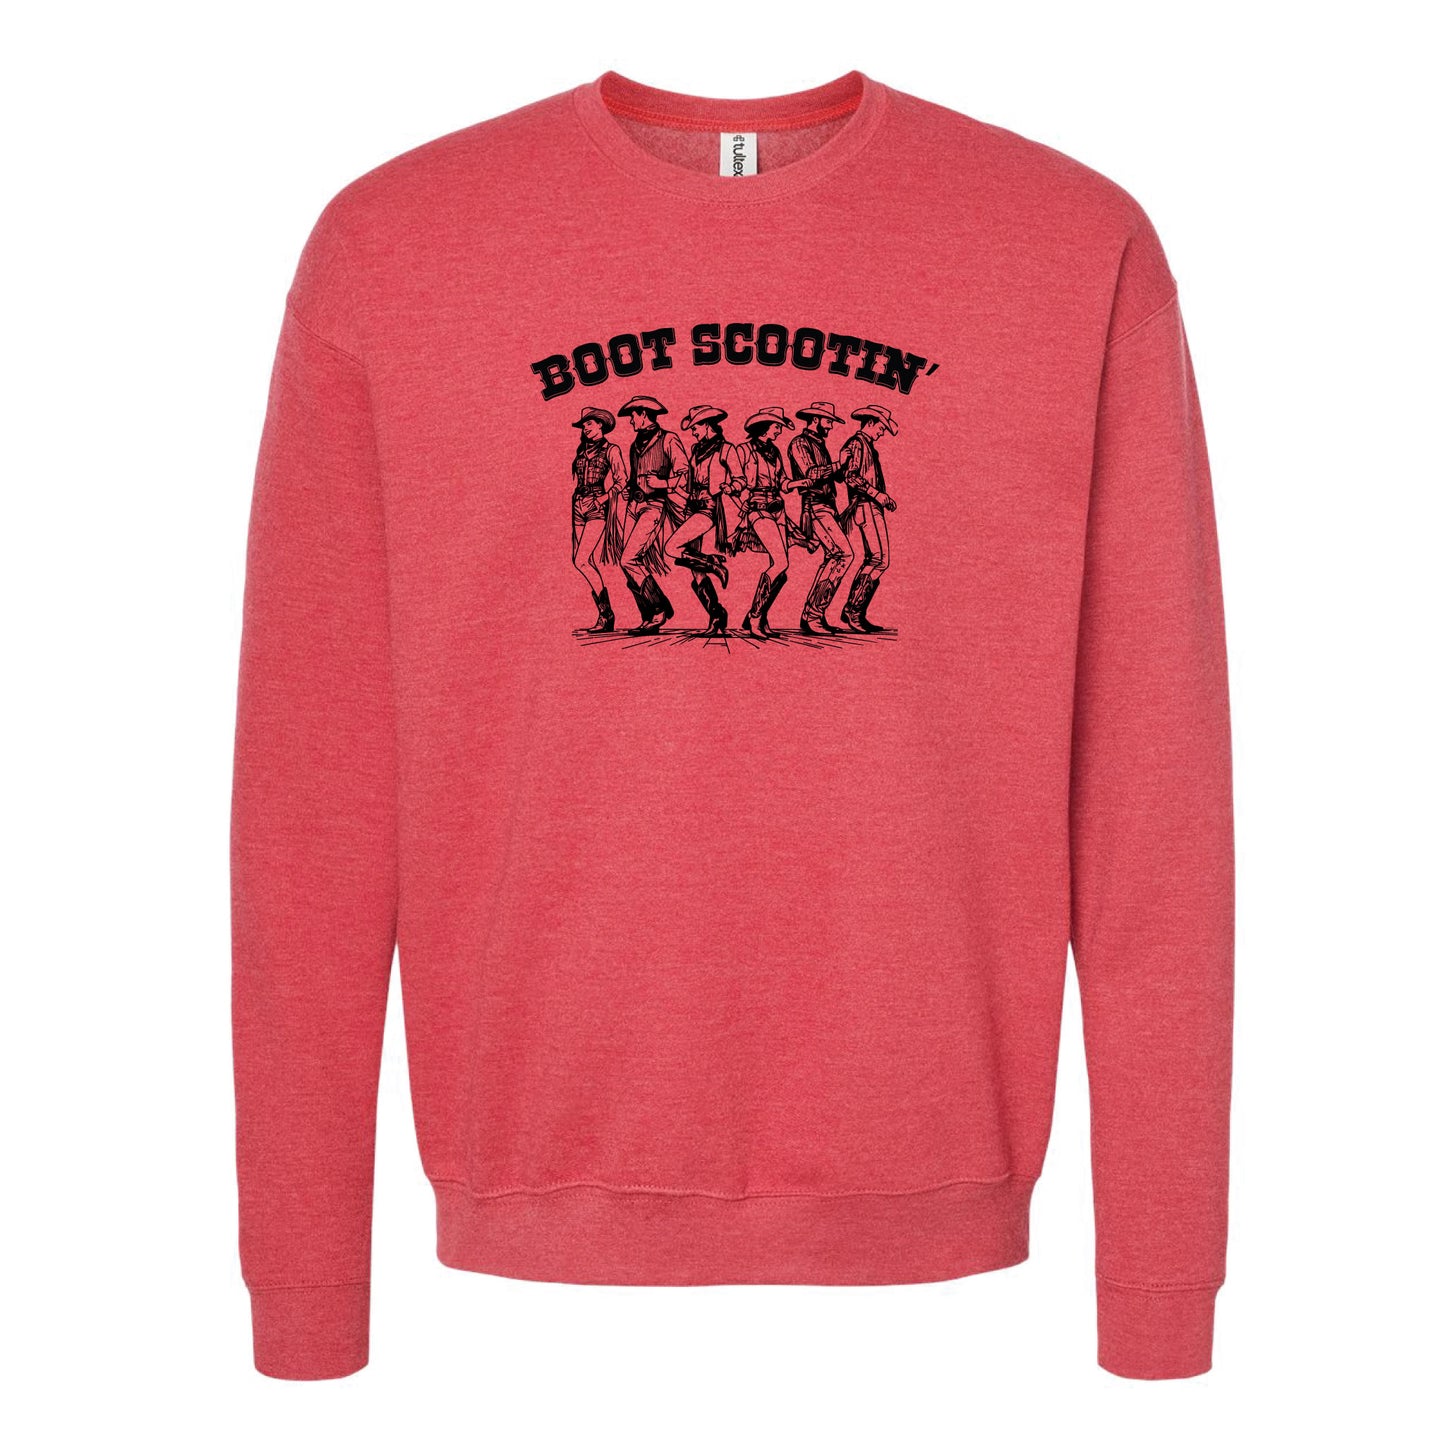 Boot Scootin' Boogie Crewneck Sweatshirt